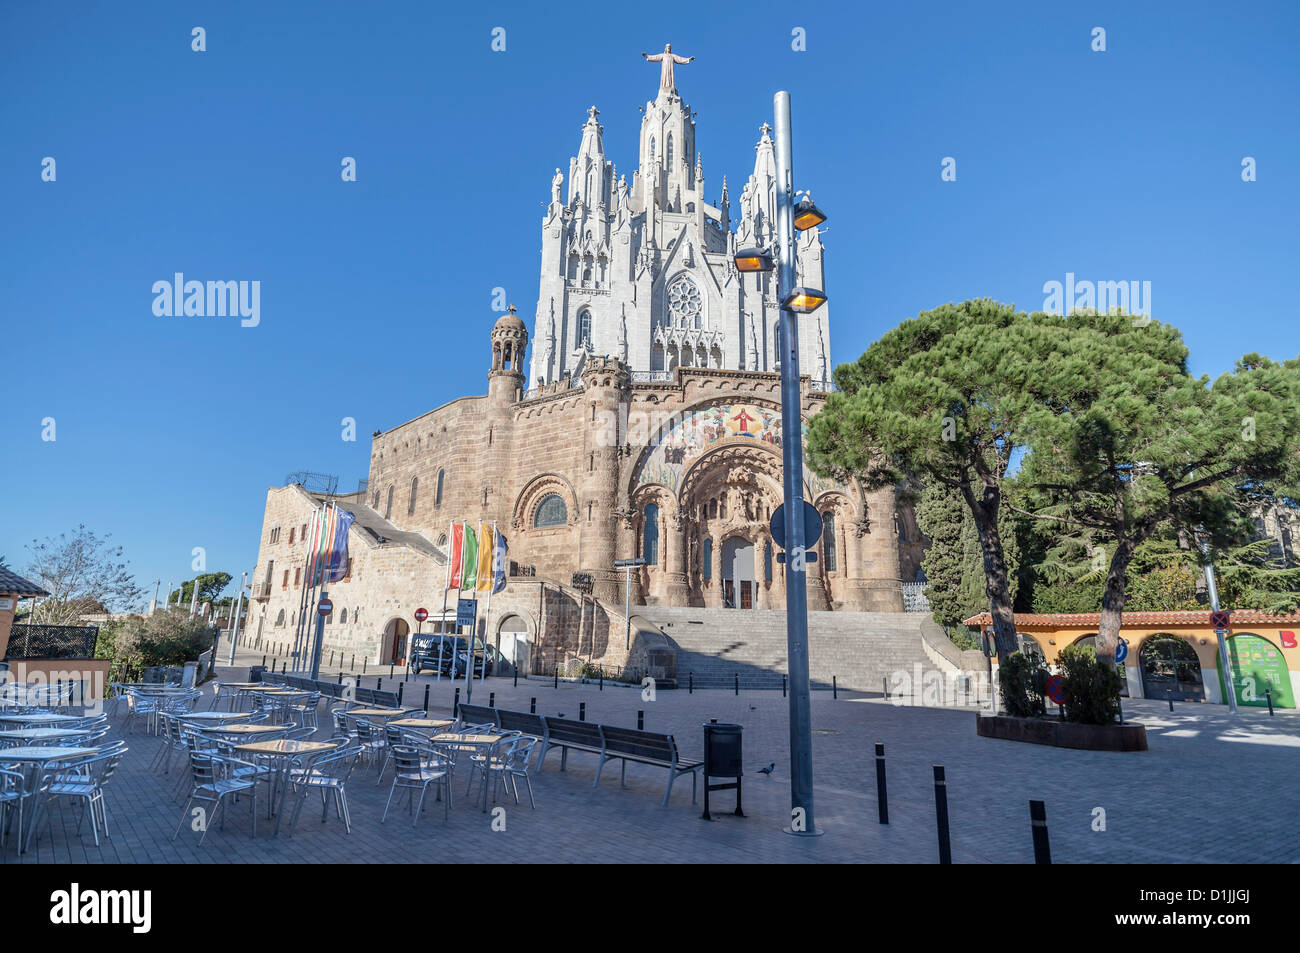 Temple expiatori del sagrat cor located in tibidabo,Barcelona Stock Photo